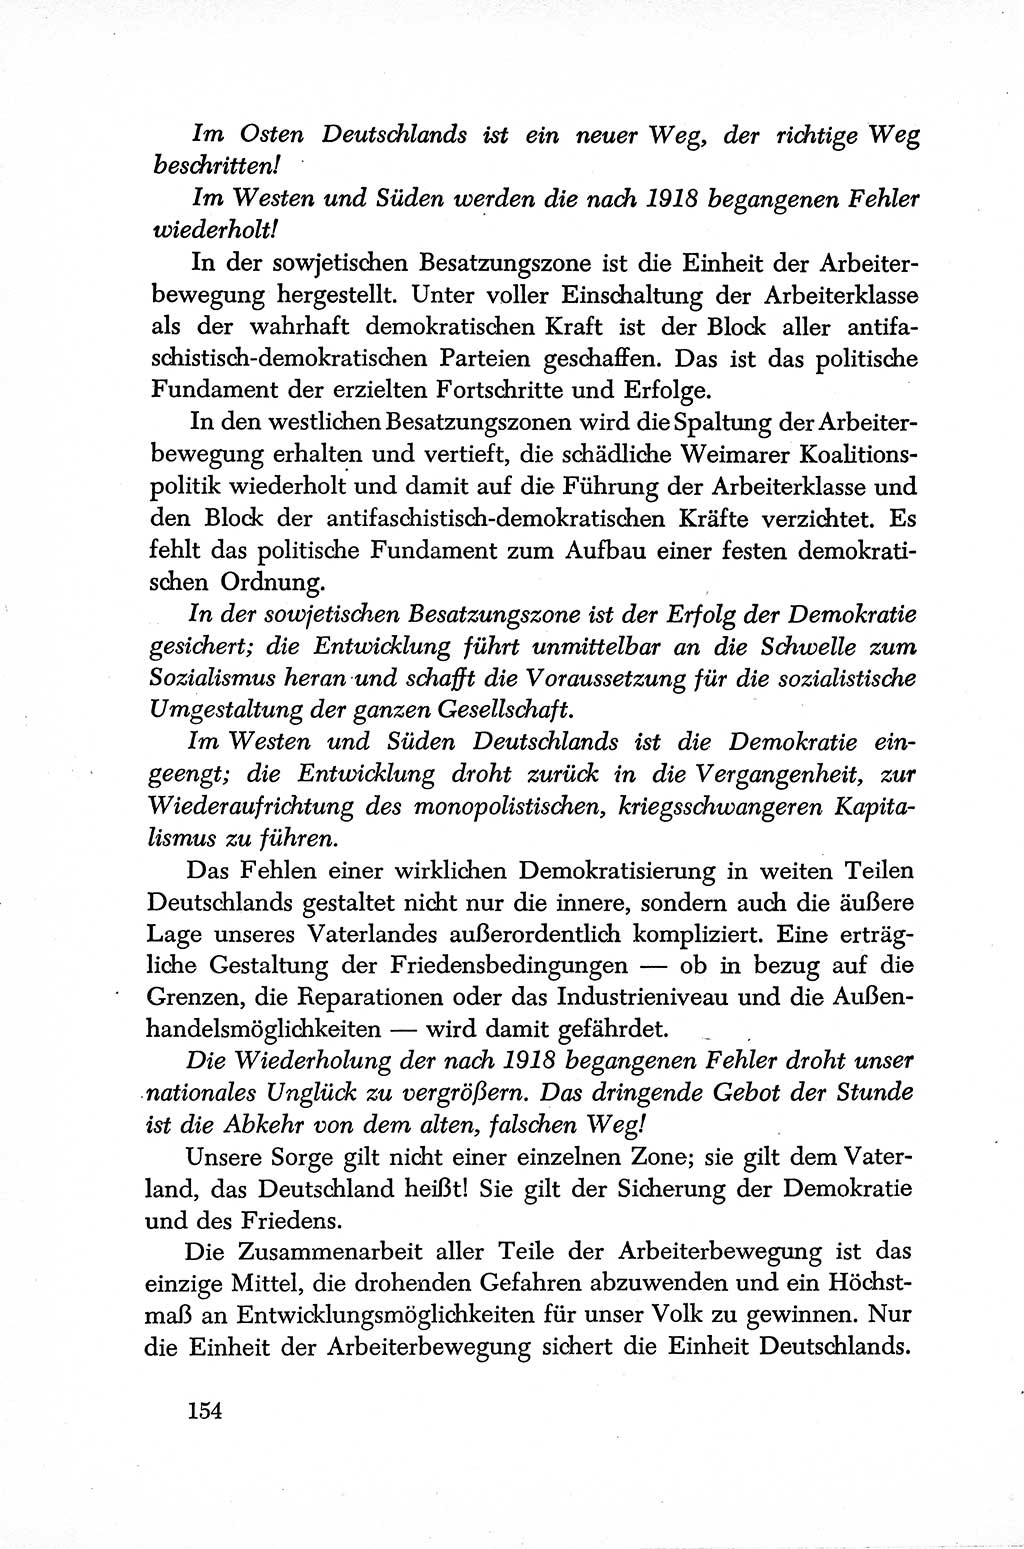 Dokumente der Sozialistischen Einheitspartei Deutschlands (SED) [Sowjetische Besatzungszone (SBZ) Deutschlands] 1946-1948, Seite 154 (Dok. SED SBZ Dtl. 1946-1948, S. 154)